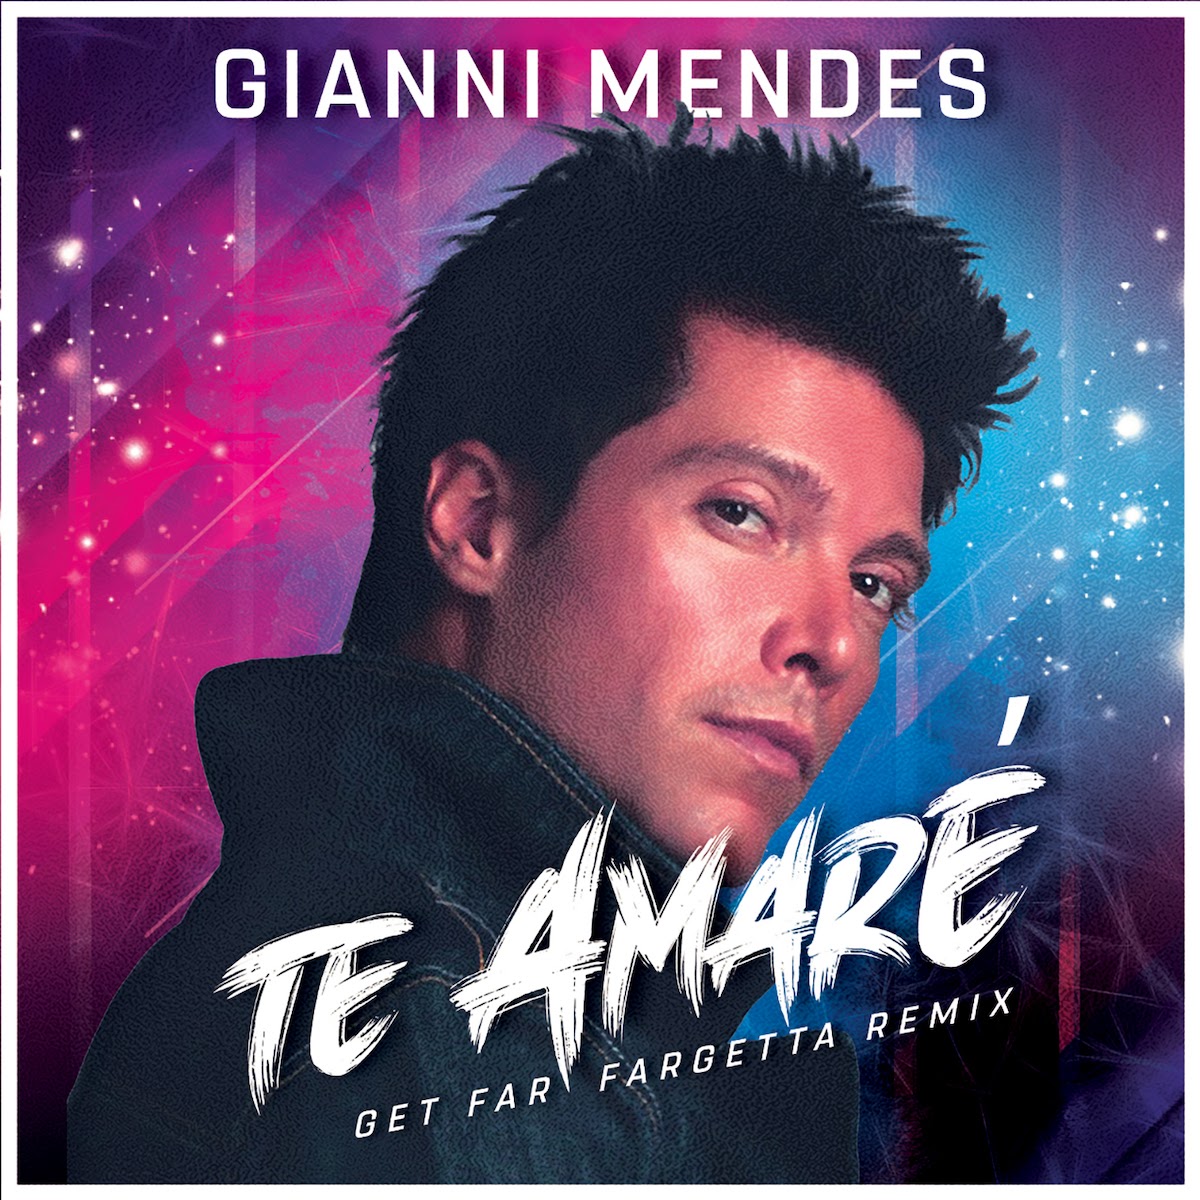 GIANNI MENDES “Te Amaré” in una nuova versione remixata da Get Far Fargetta, uno dei dj più popolari e amati d’Italia